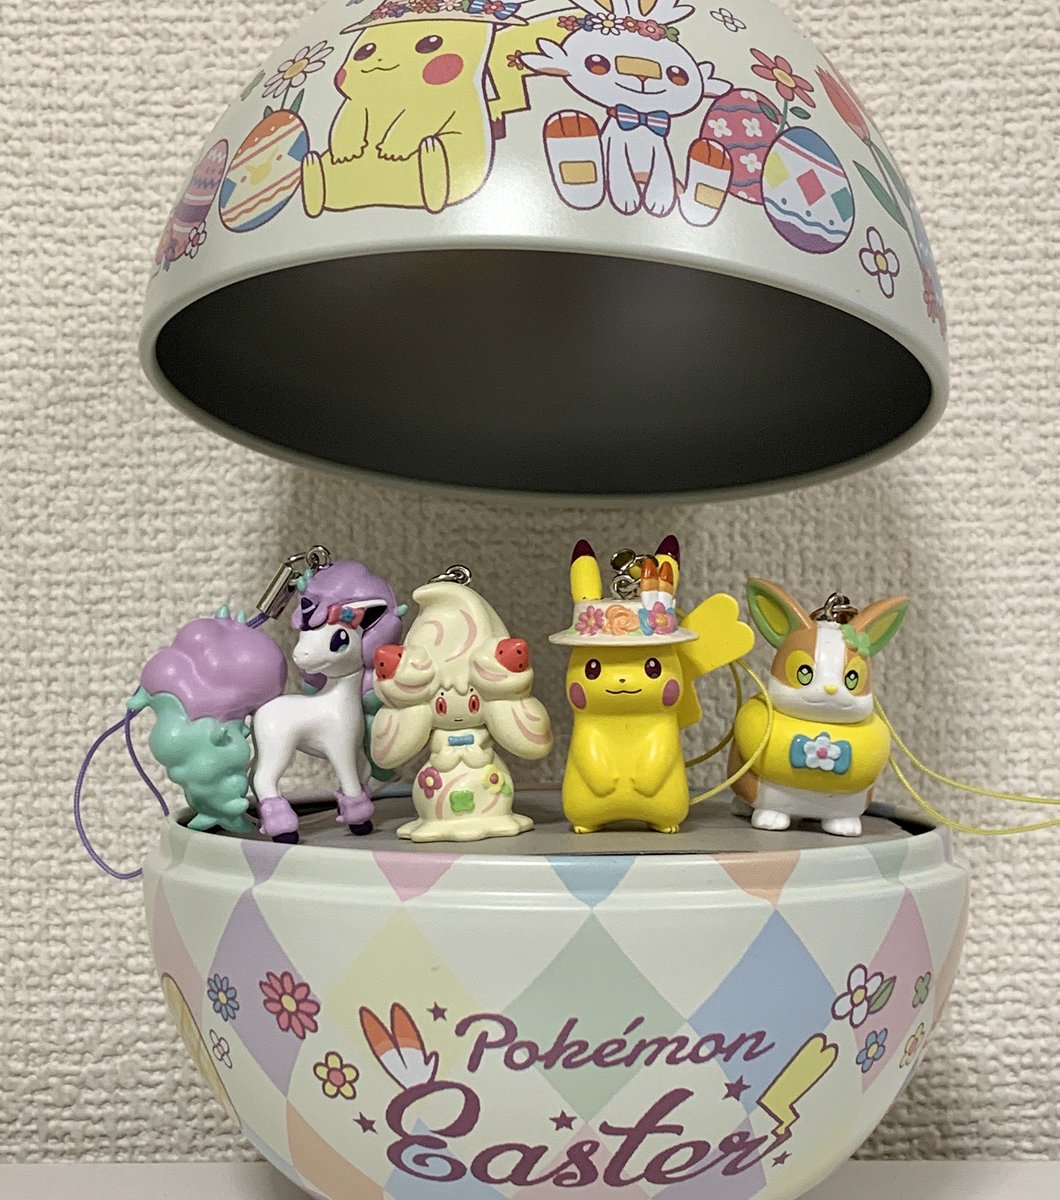 ポケモンセンターnakayama No Twitter エッグケース入りフィギュア Pokemon Easterが届きました ポケモンセンター